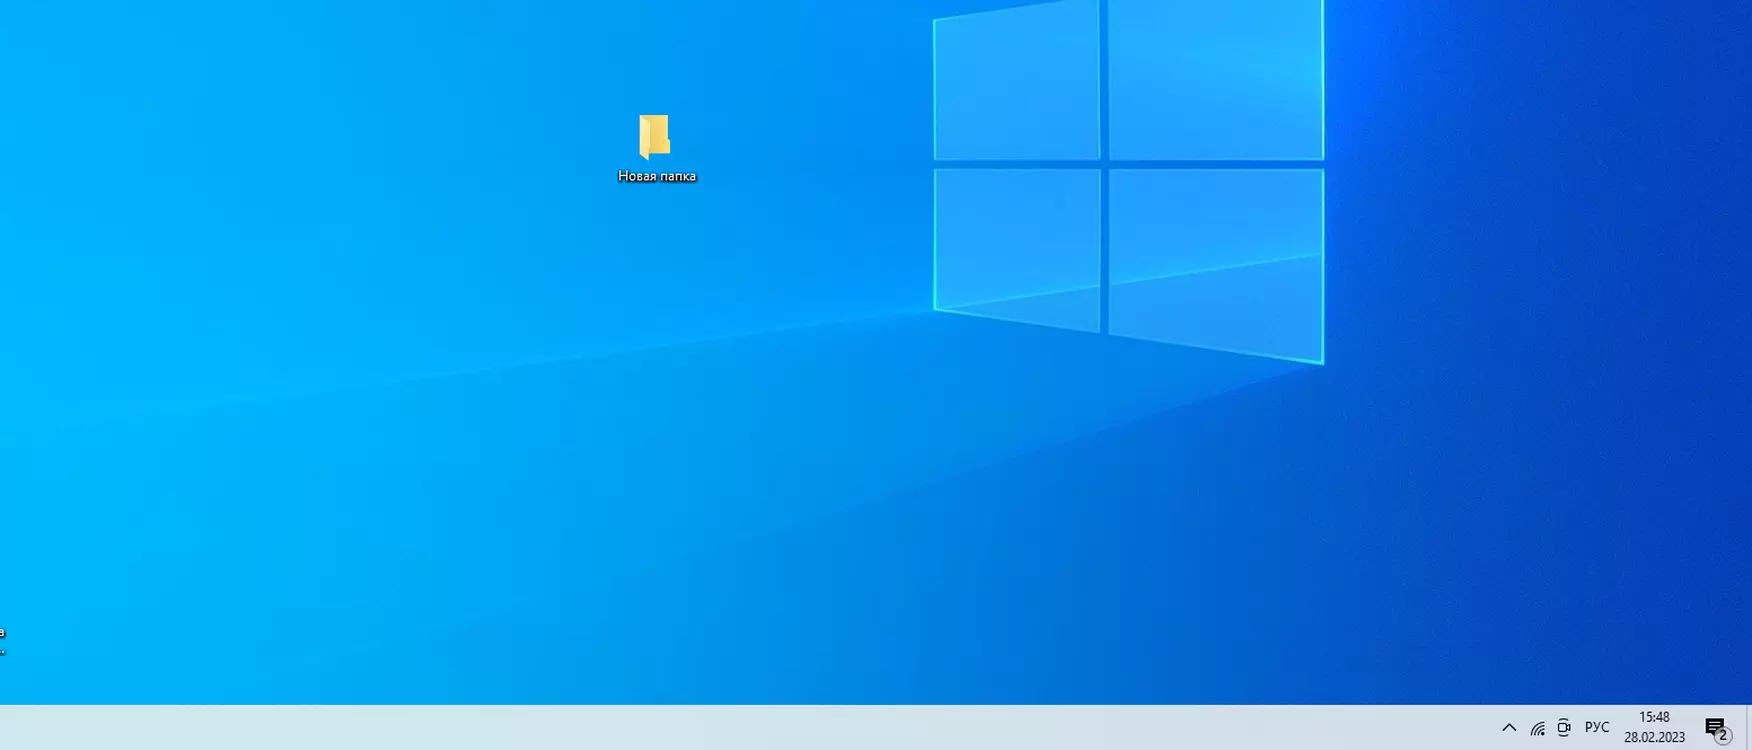 Обновление Windows 10 поломало рабочий стол и меню «Пуск». Как решить проблему